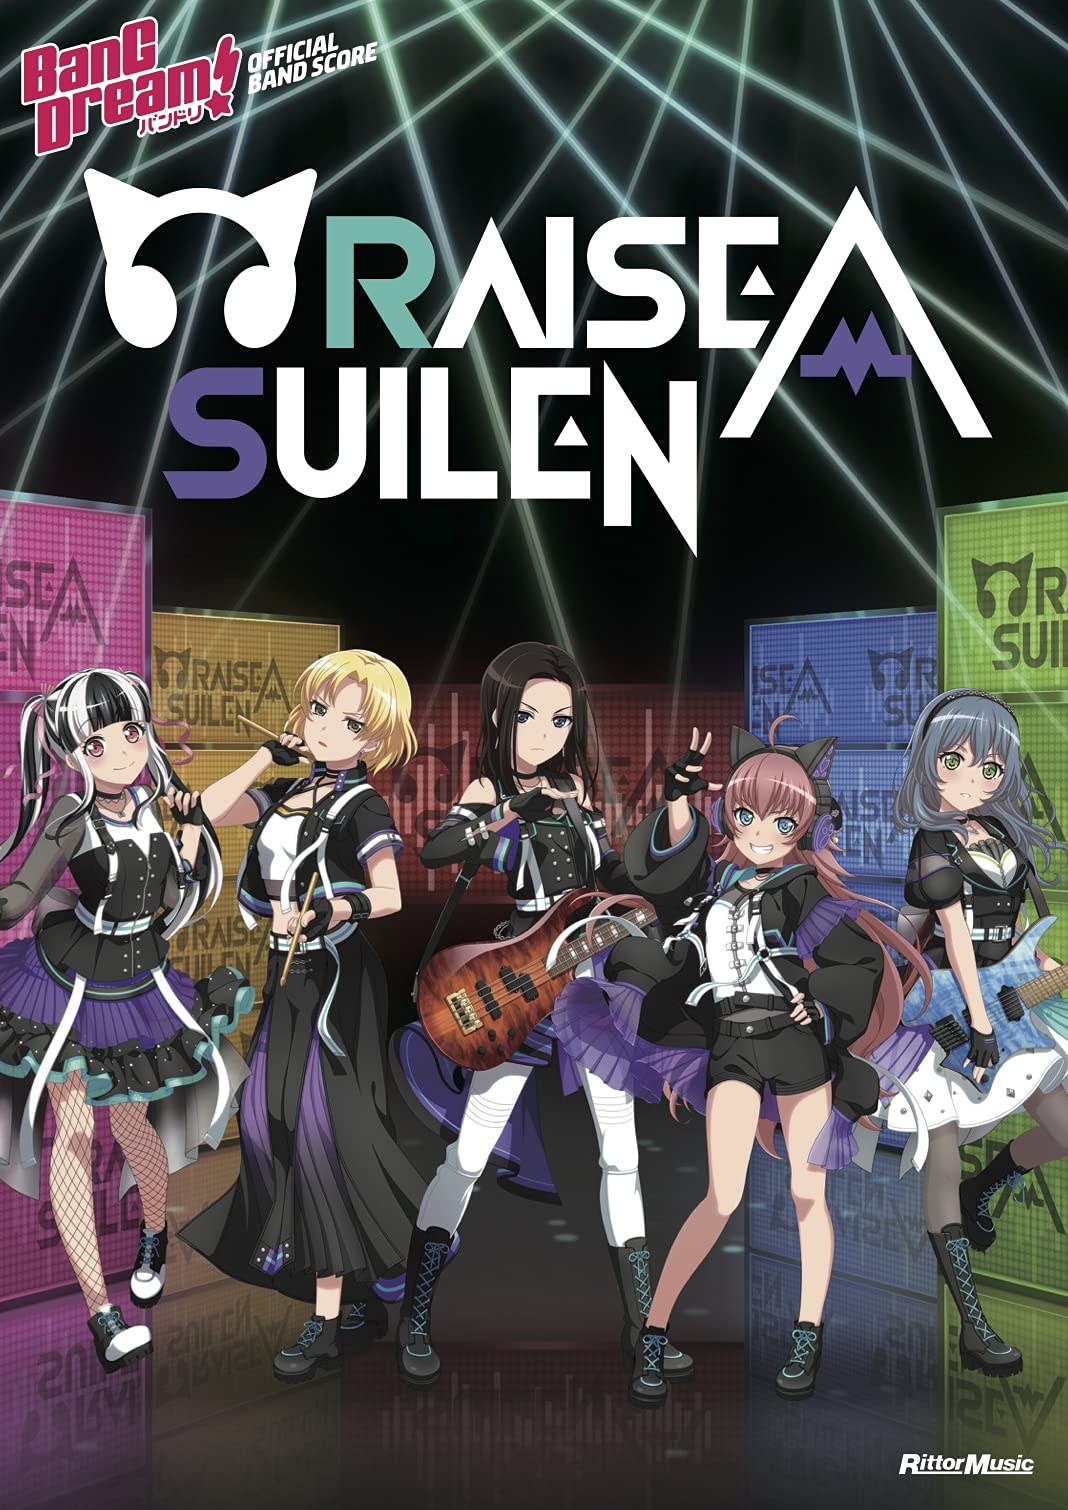 BanG Dreams!(Anime) Official Band Score RAISE A SUILEN Sheet Music Book